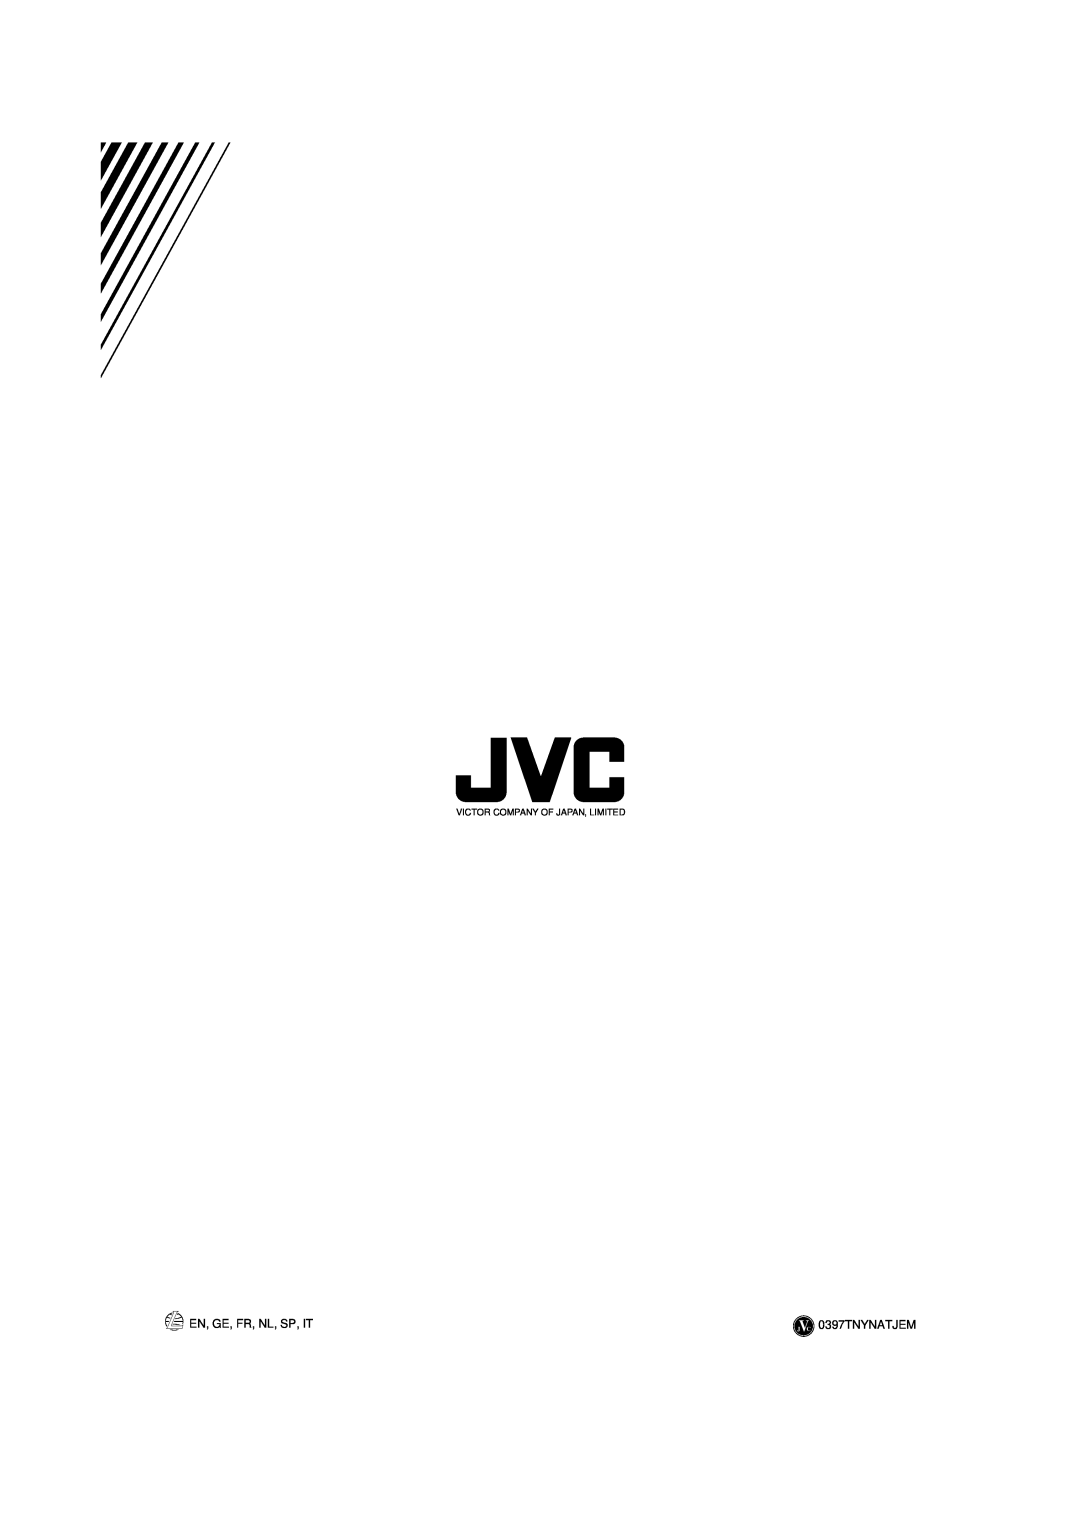 JVC CA-D351TR, CA-D551TR, CA-D451TR manual En, Ge, Fr, Nl, Sp, It, 0397TNYNATJEM, Victor Company Of Japan, Limited 